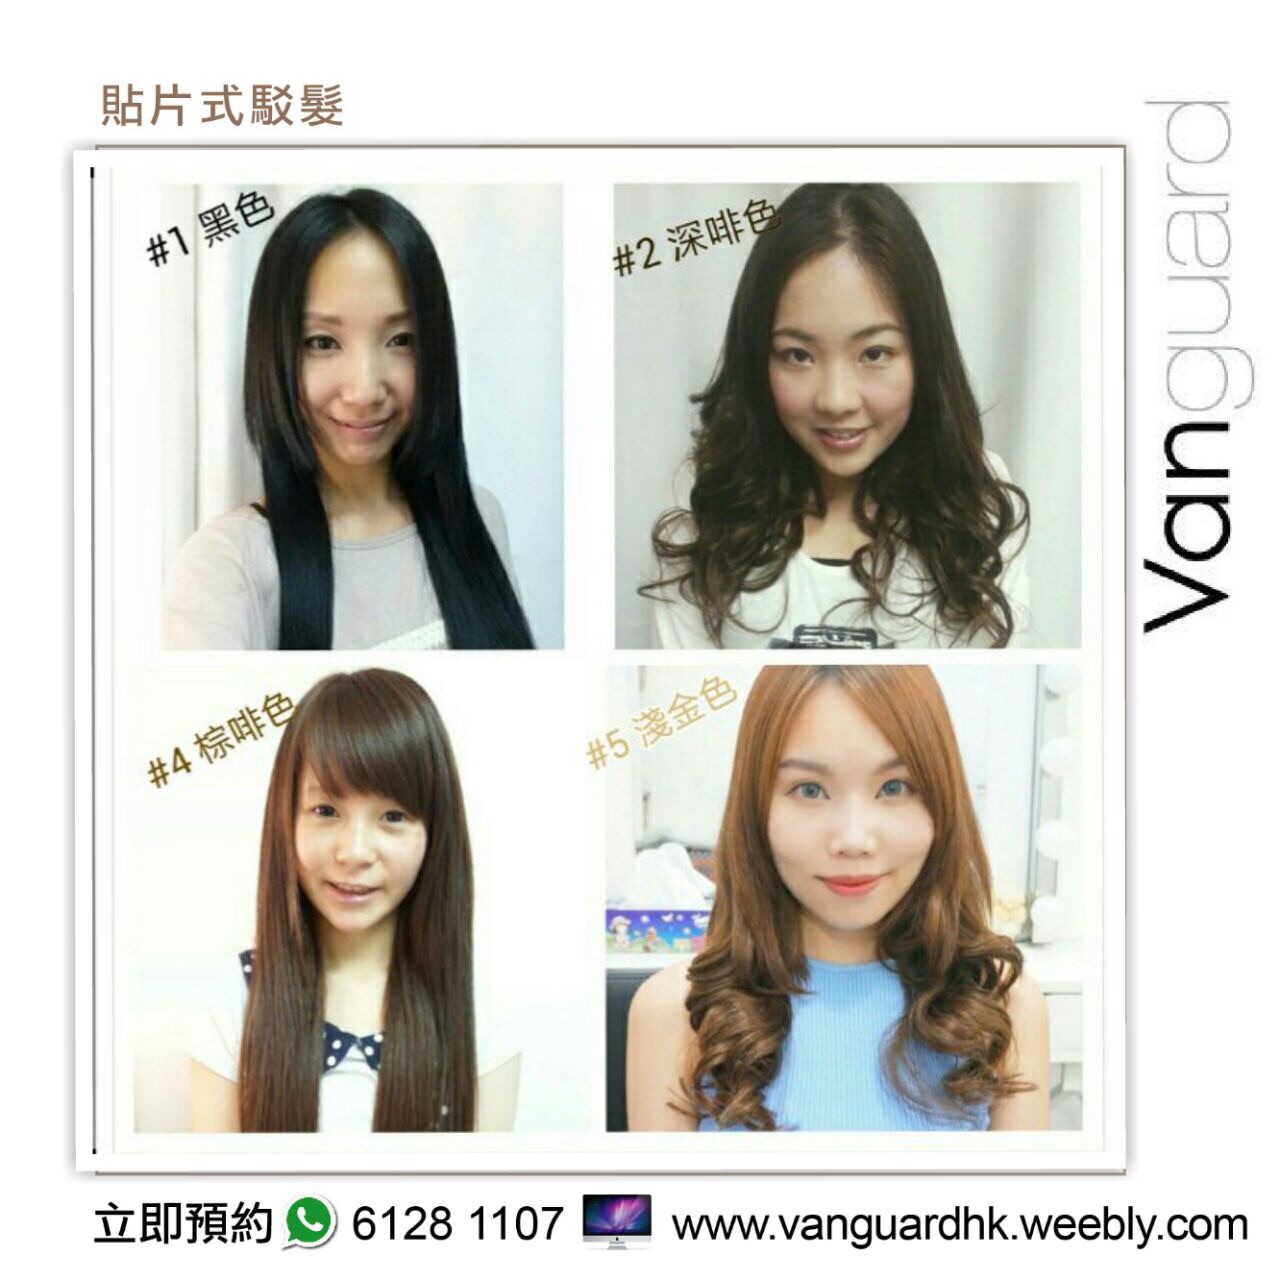 植髮/駁髮: Vanguard HK 無痕貼片式駁髮專門店